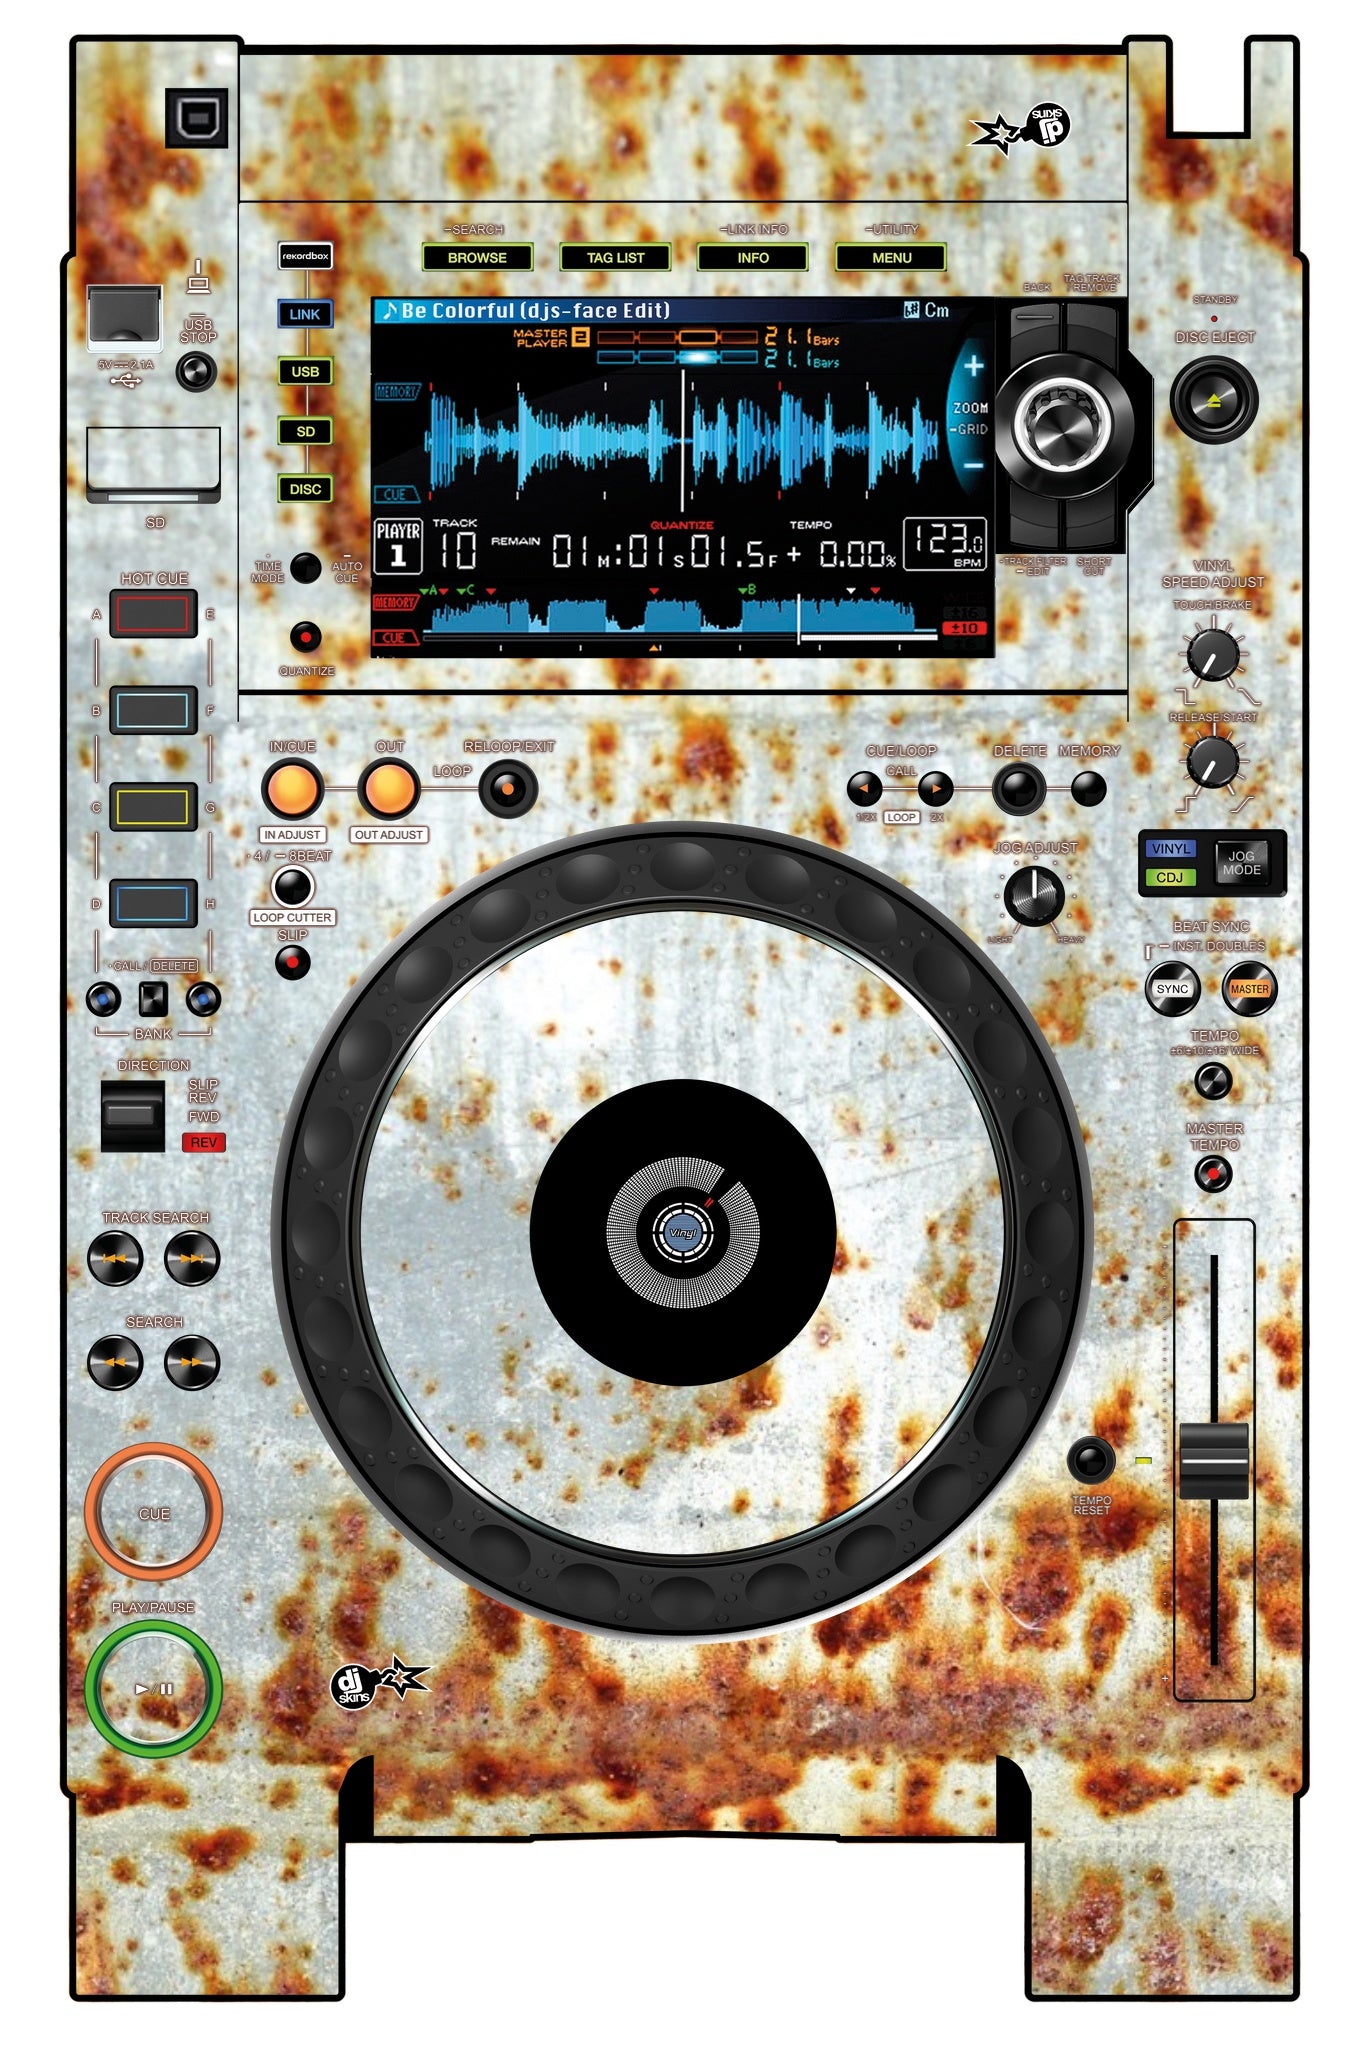 Pioneer DJ CDJ 2000 NEXUS 2 Skin In-Rust-Rial